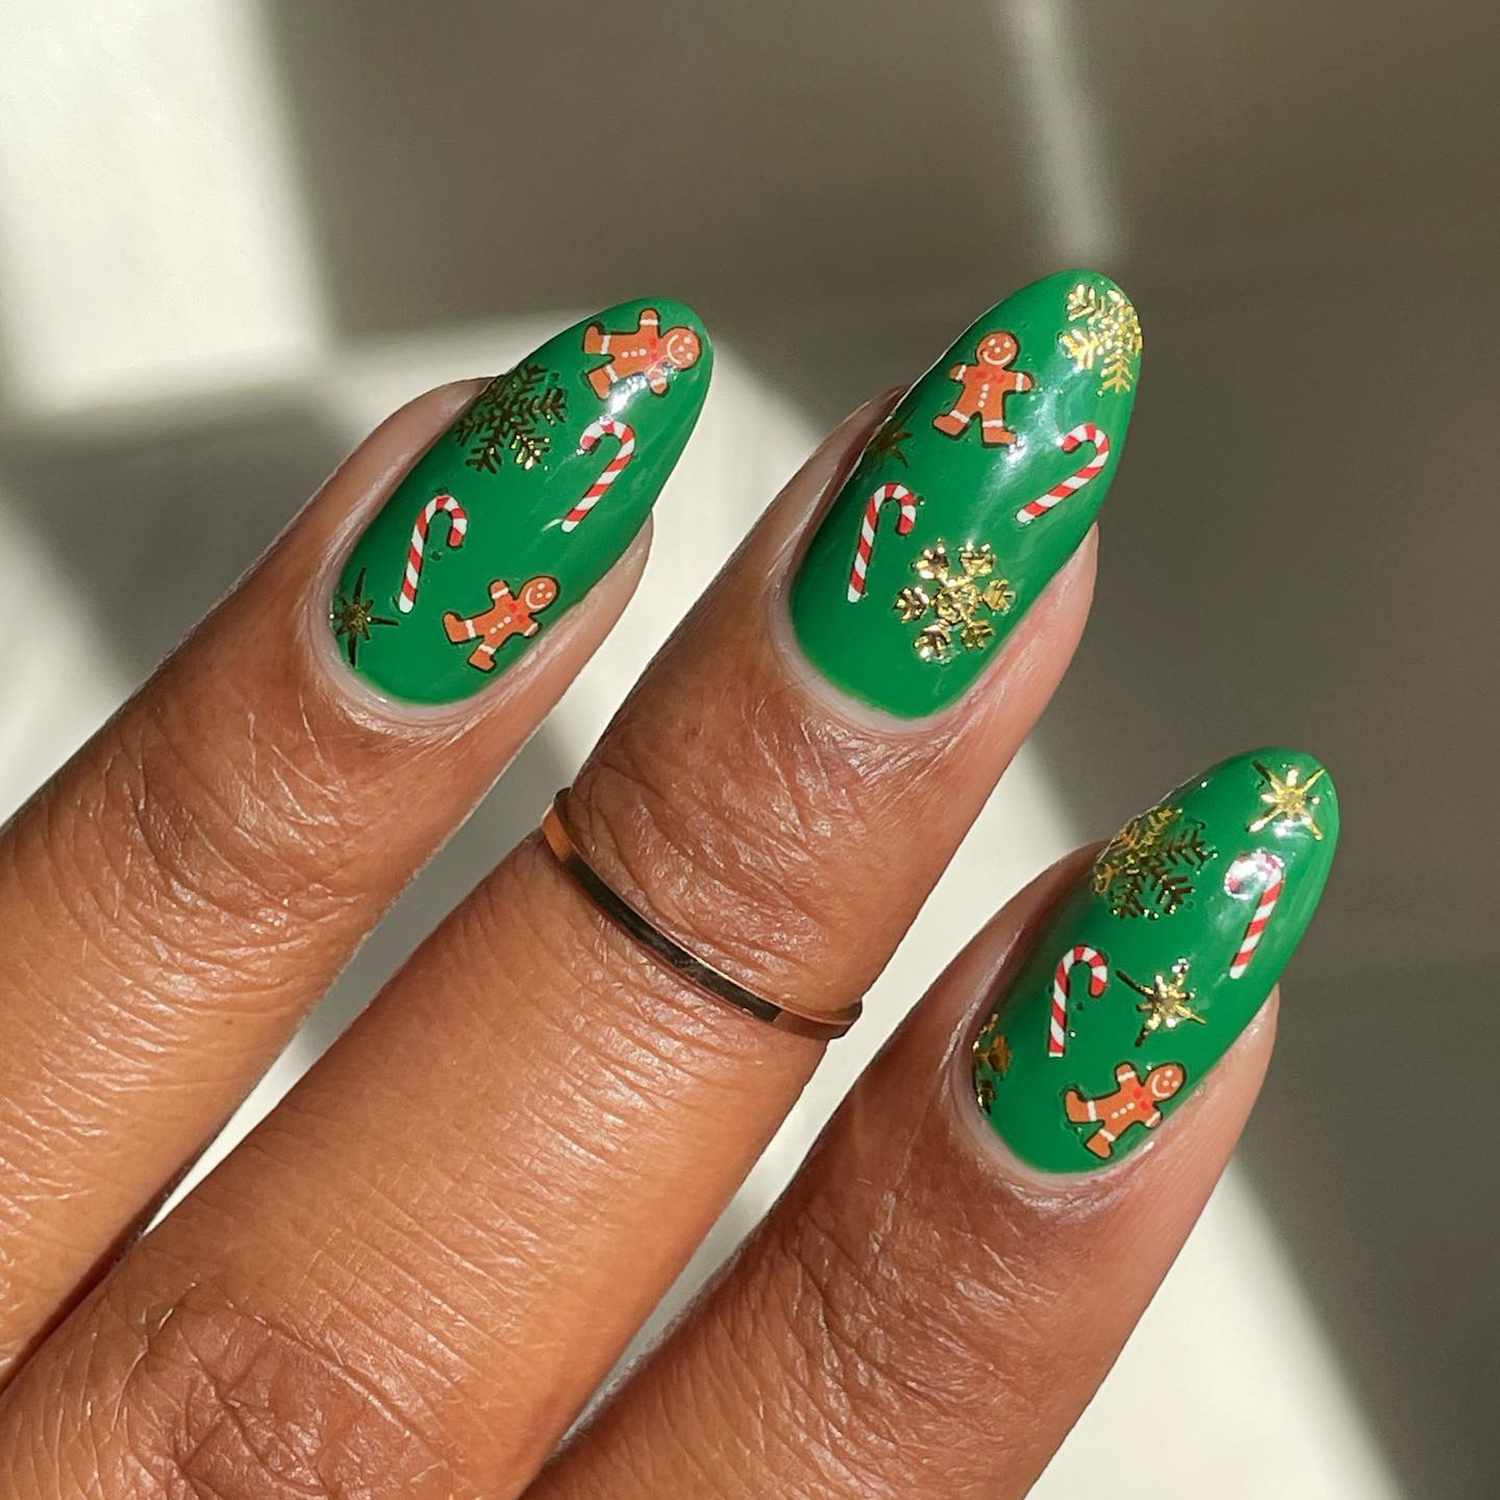 Fecha r-Up Green Manicure com adesivos sazonais festivos